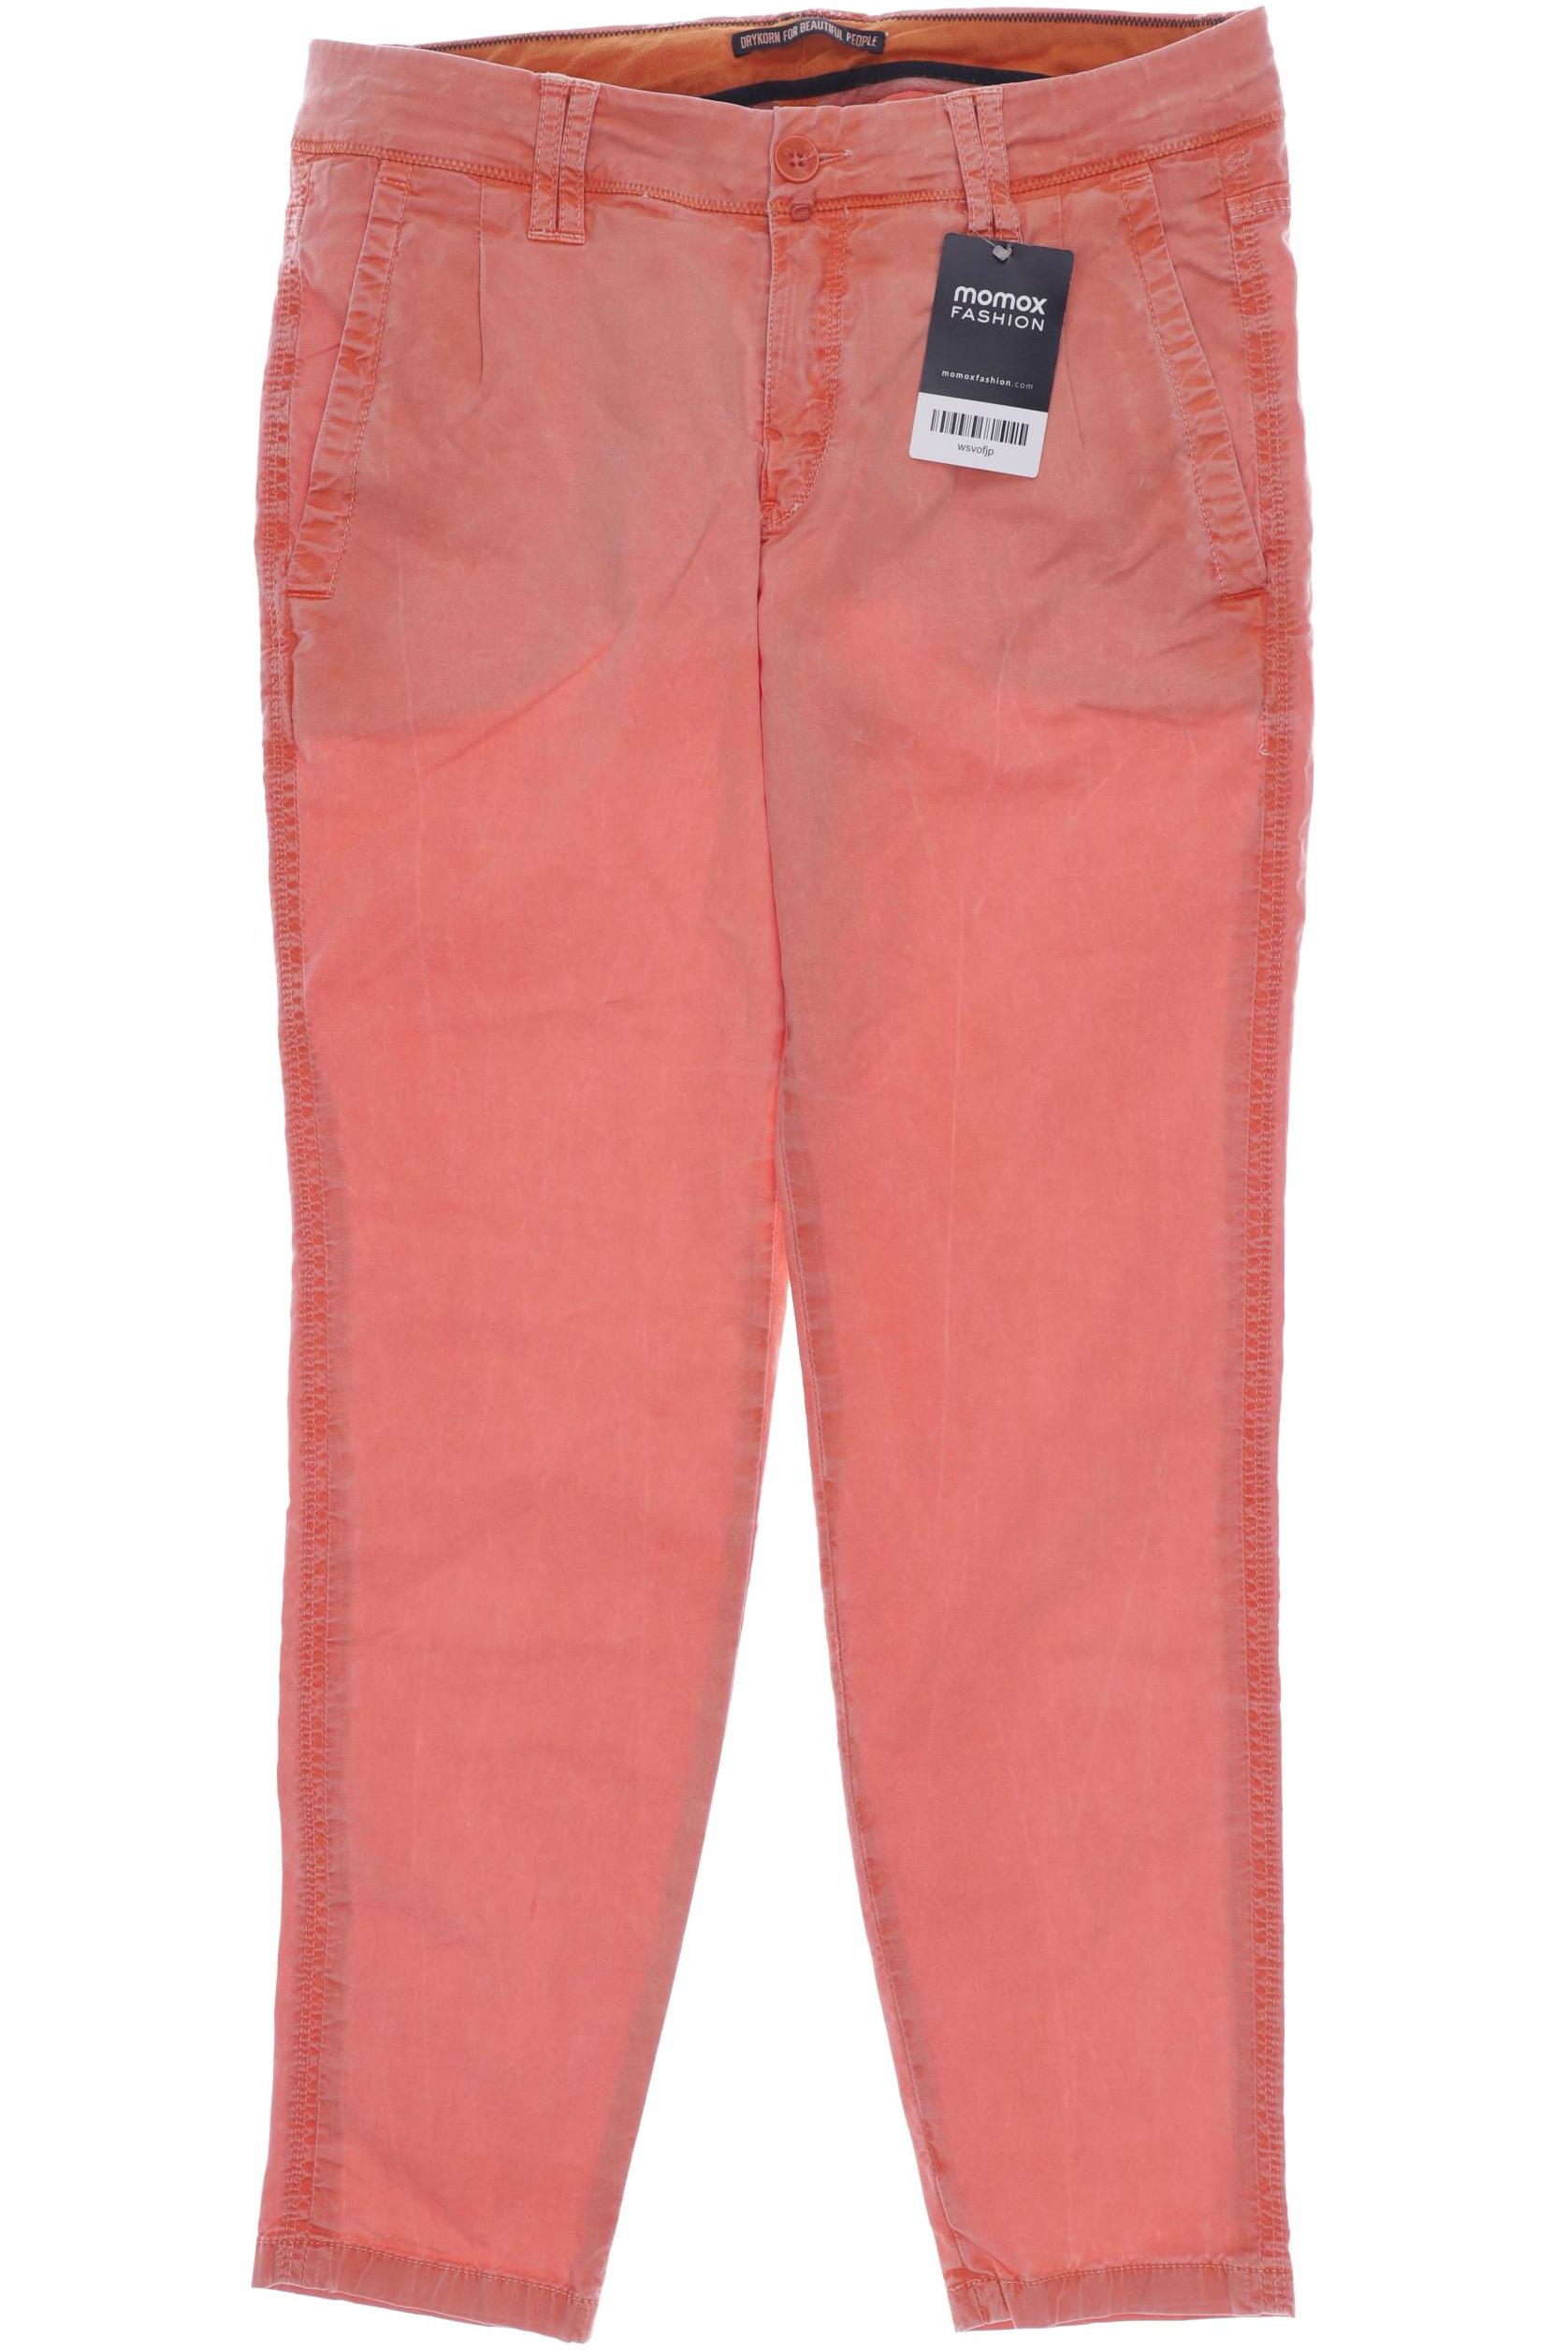 Drykorn Damen Jeans, orange von drykorn